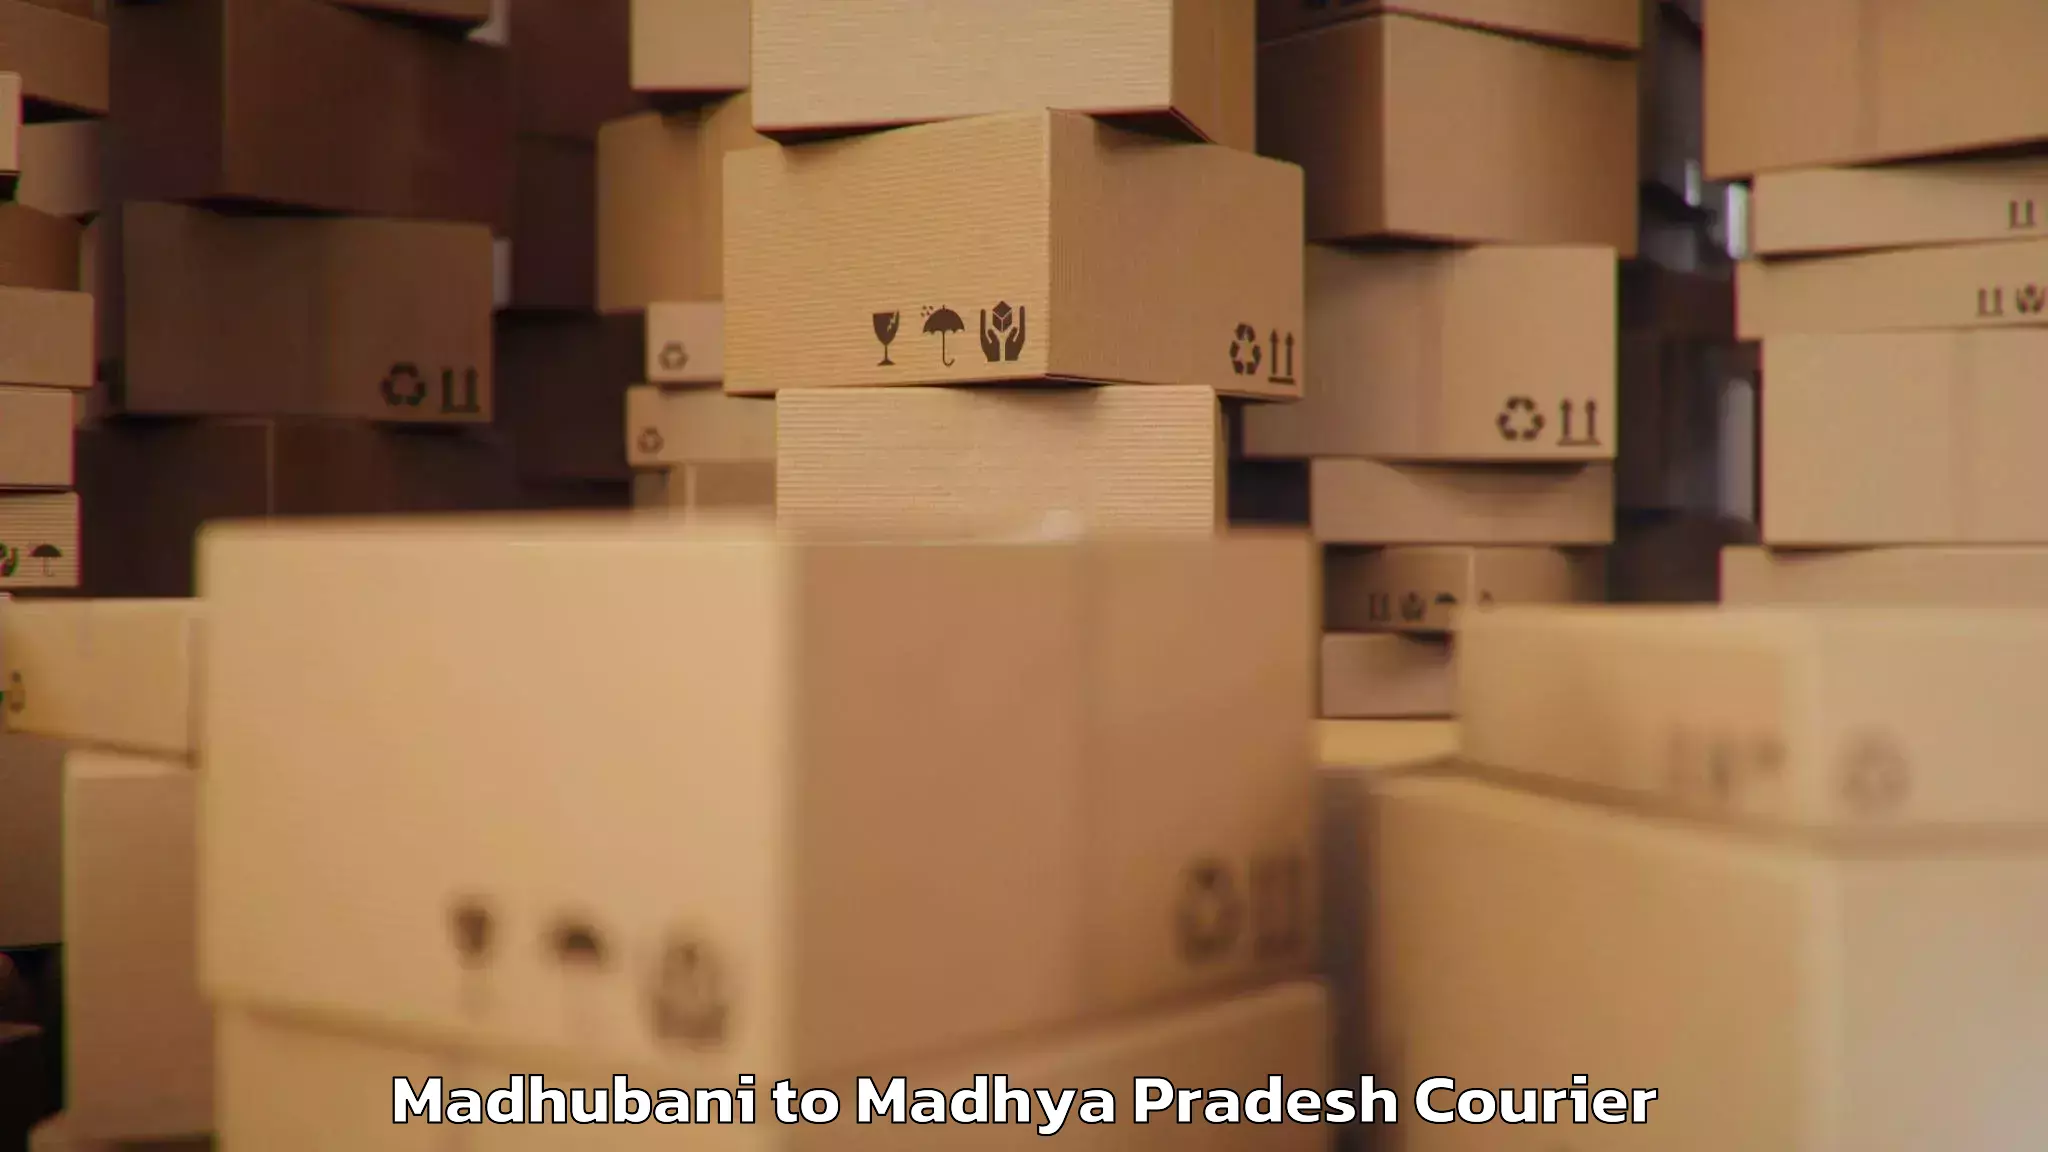 Luggage delivery system Madhubani to Lashkar